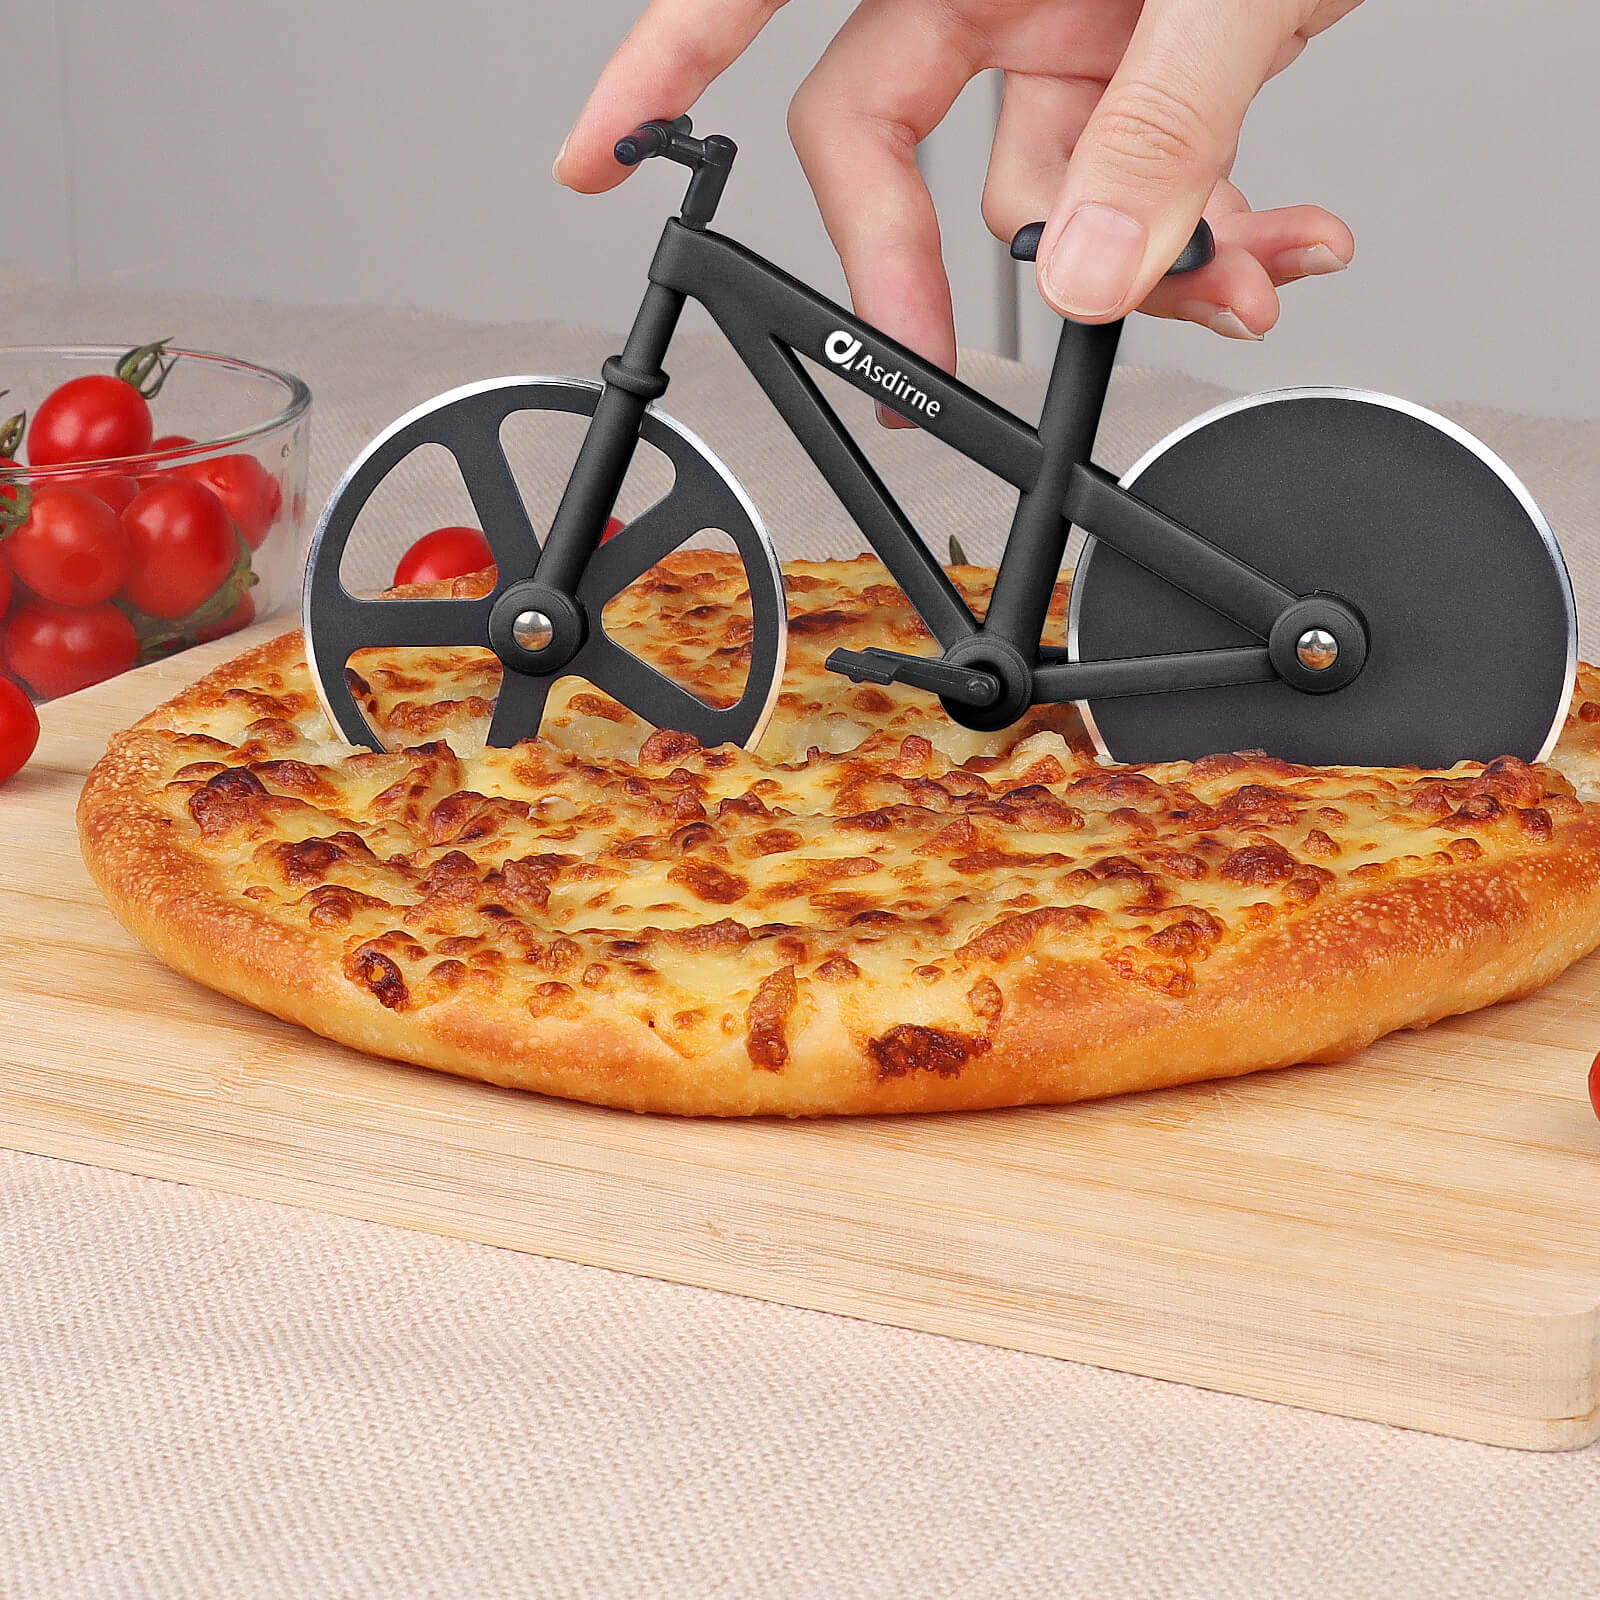 Asdirne Pizza Cutter, Bicycle Pizza Cutter, Black